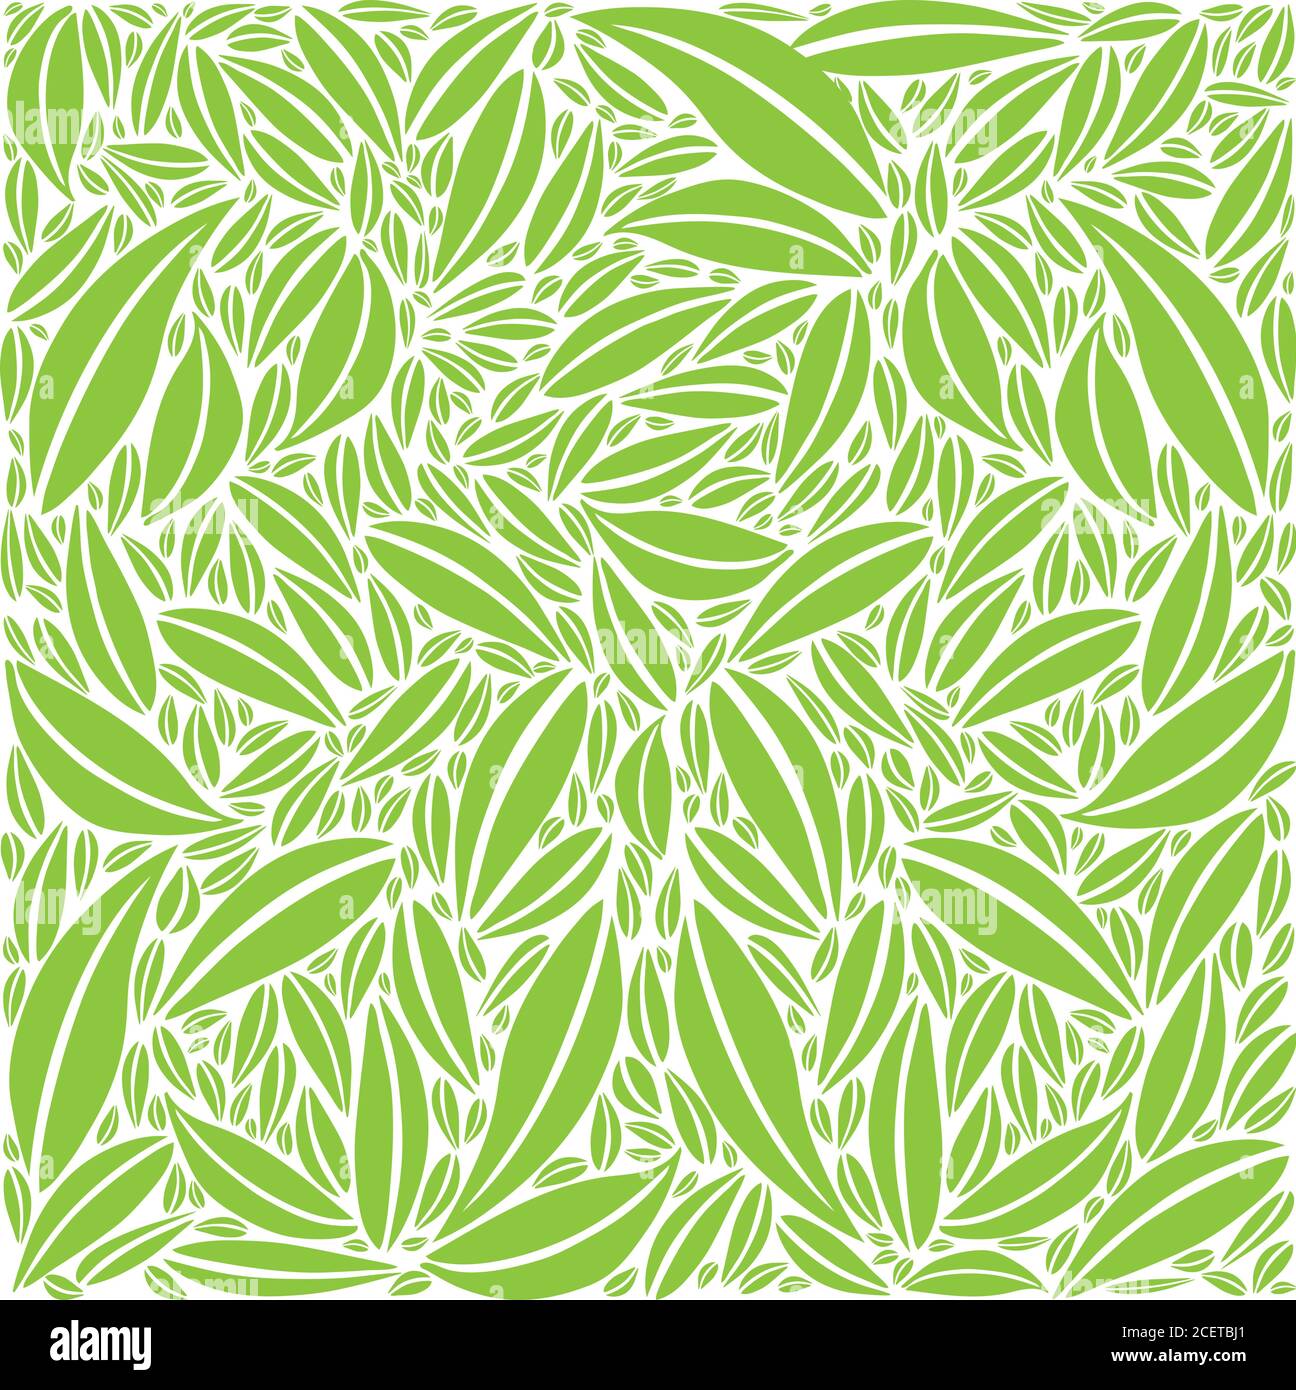 Motif feuillage - Petites et grandes feuilles - couleurs vertes - Monochrome Illustration de Vecteur